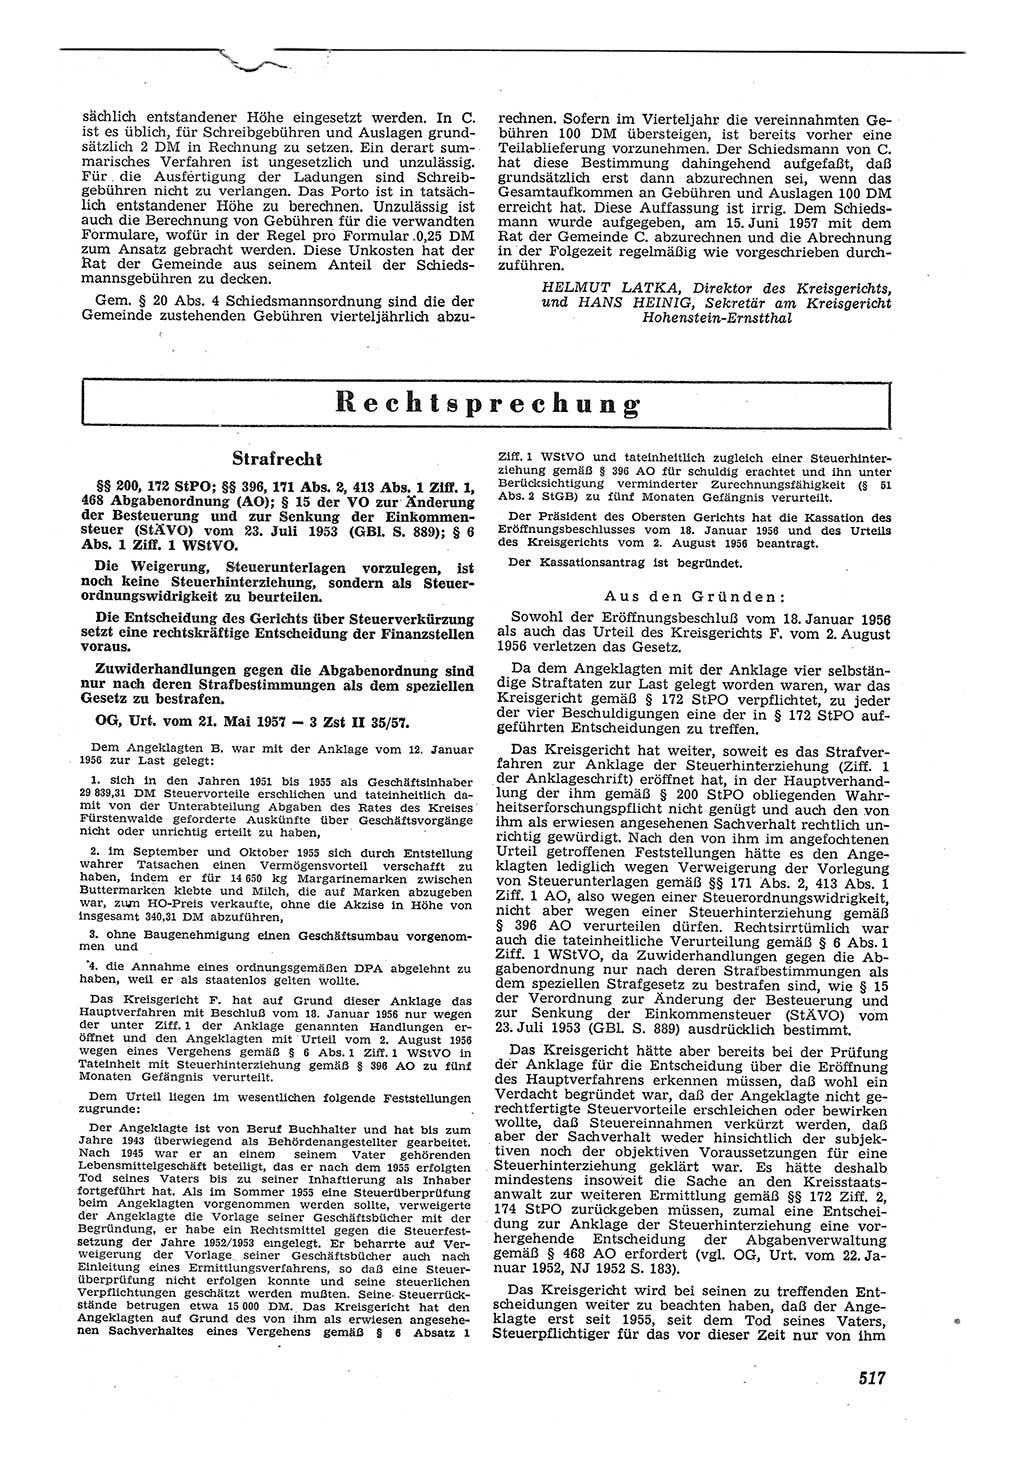 Neue Justiz (NJ), Zeitschrift für Recht und Rechtswissenschaft [Deutsche Demokratische Republik (DDR)], 11. Jahrgang 1957, Seite 517 (NJ DDR 1957, S. 517)